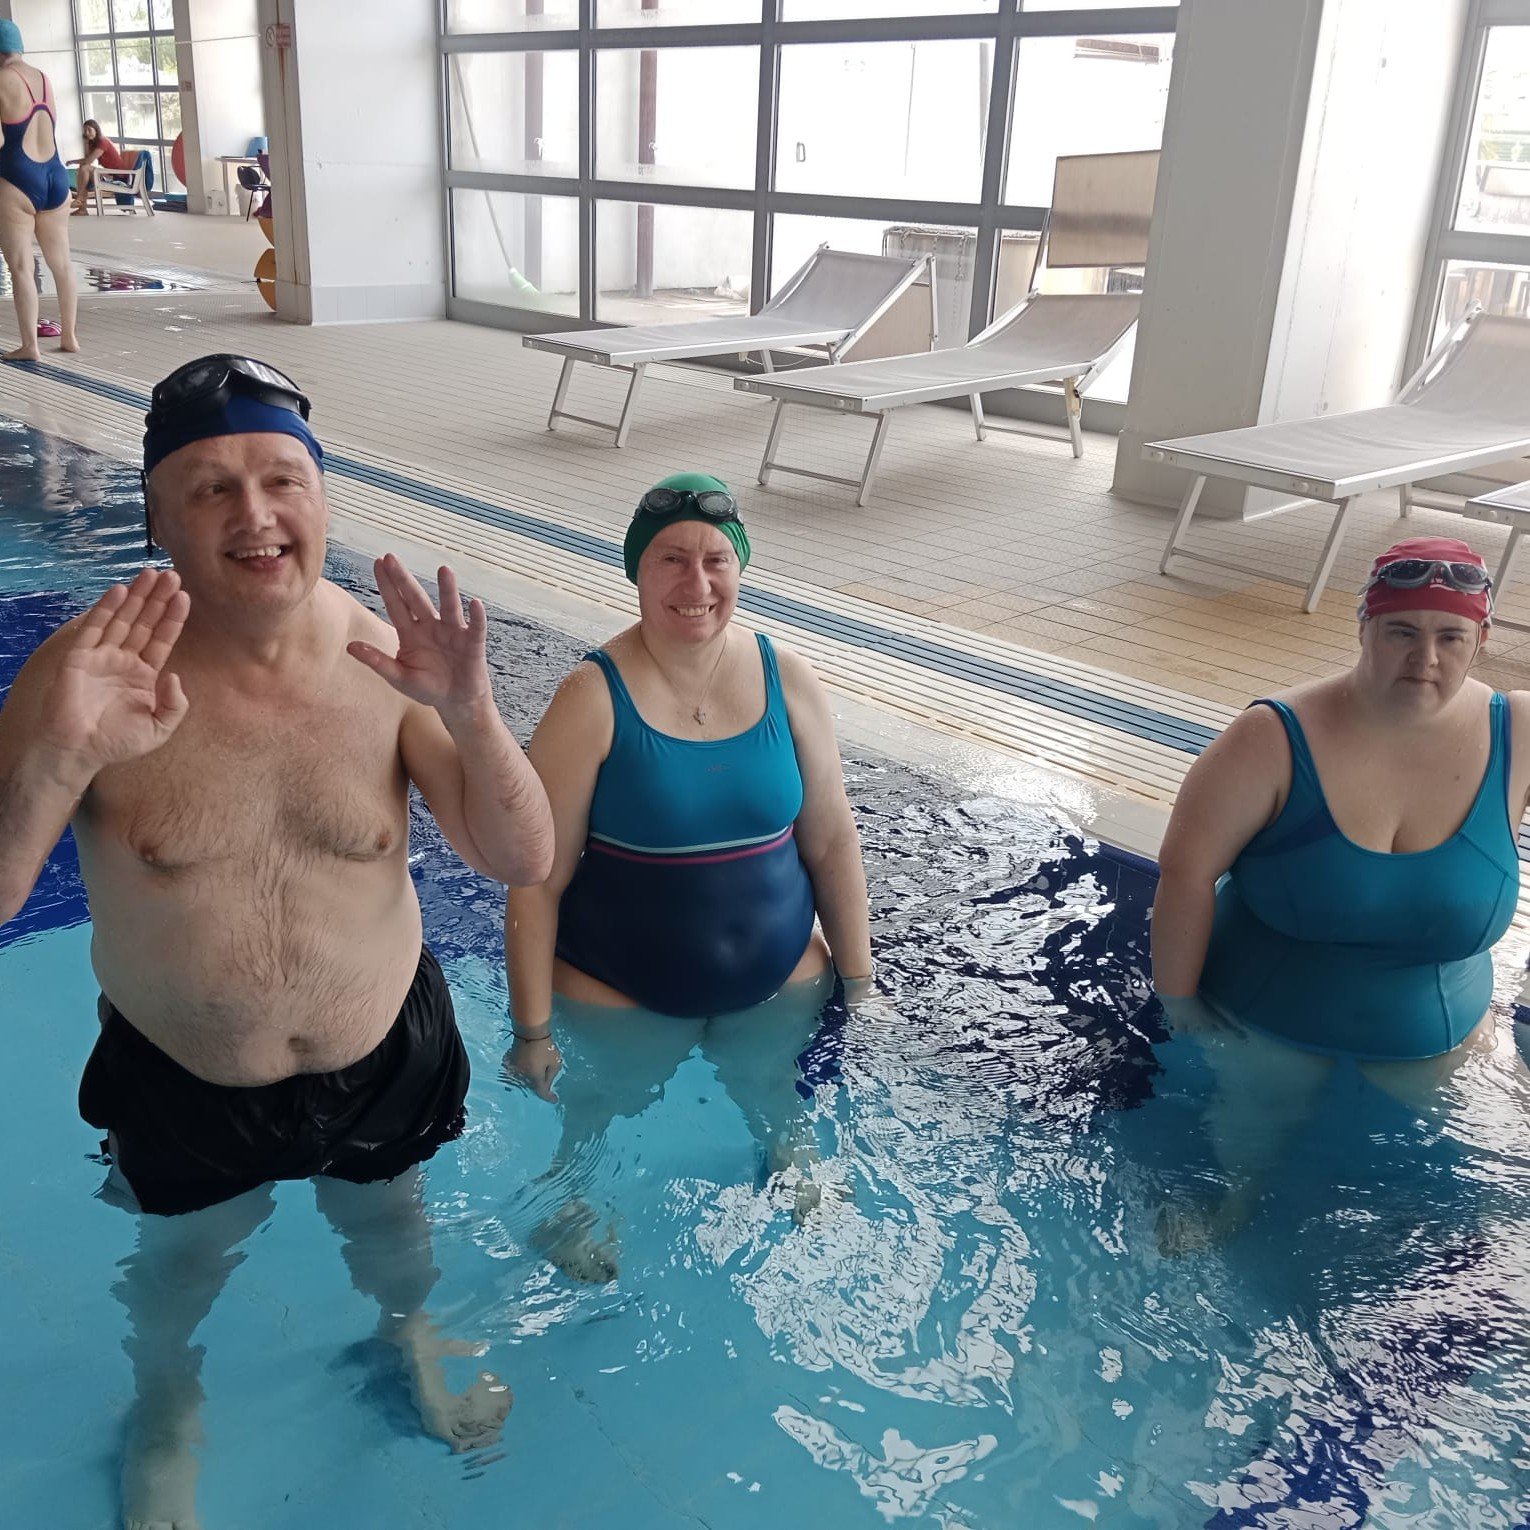 Prosegue con successo ed entusiasmo il corso di nuoto all'Aquarius Wellness Center di Magnano, un saluto dal gruppo del mercoled&igrave;! 😉 🏊&zwj;♀️
.
.
#fondazionevalentinopontello #disabilit&agrave; #centrodiurno #centroresidenziale #corsodinuoto